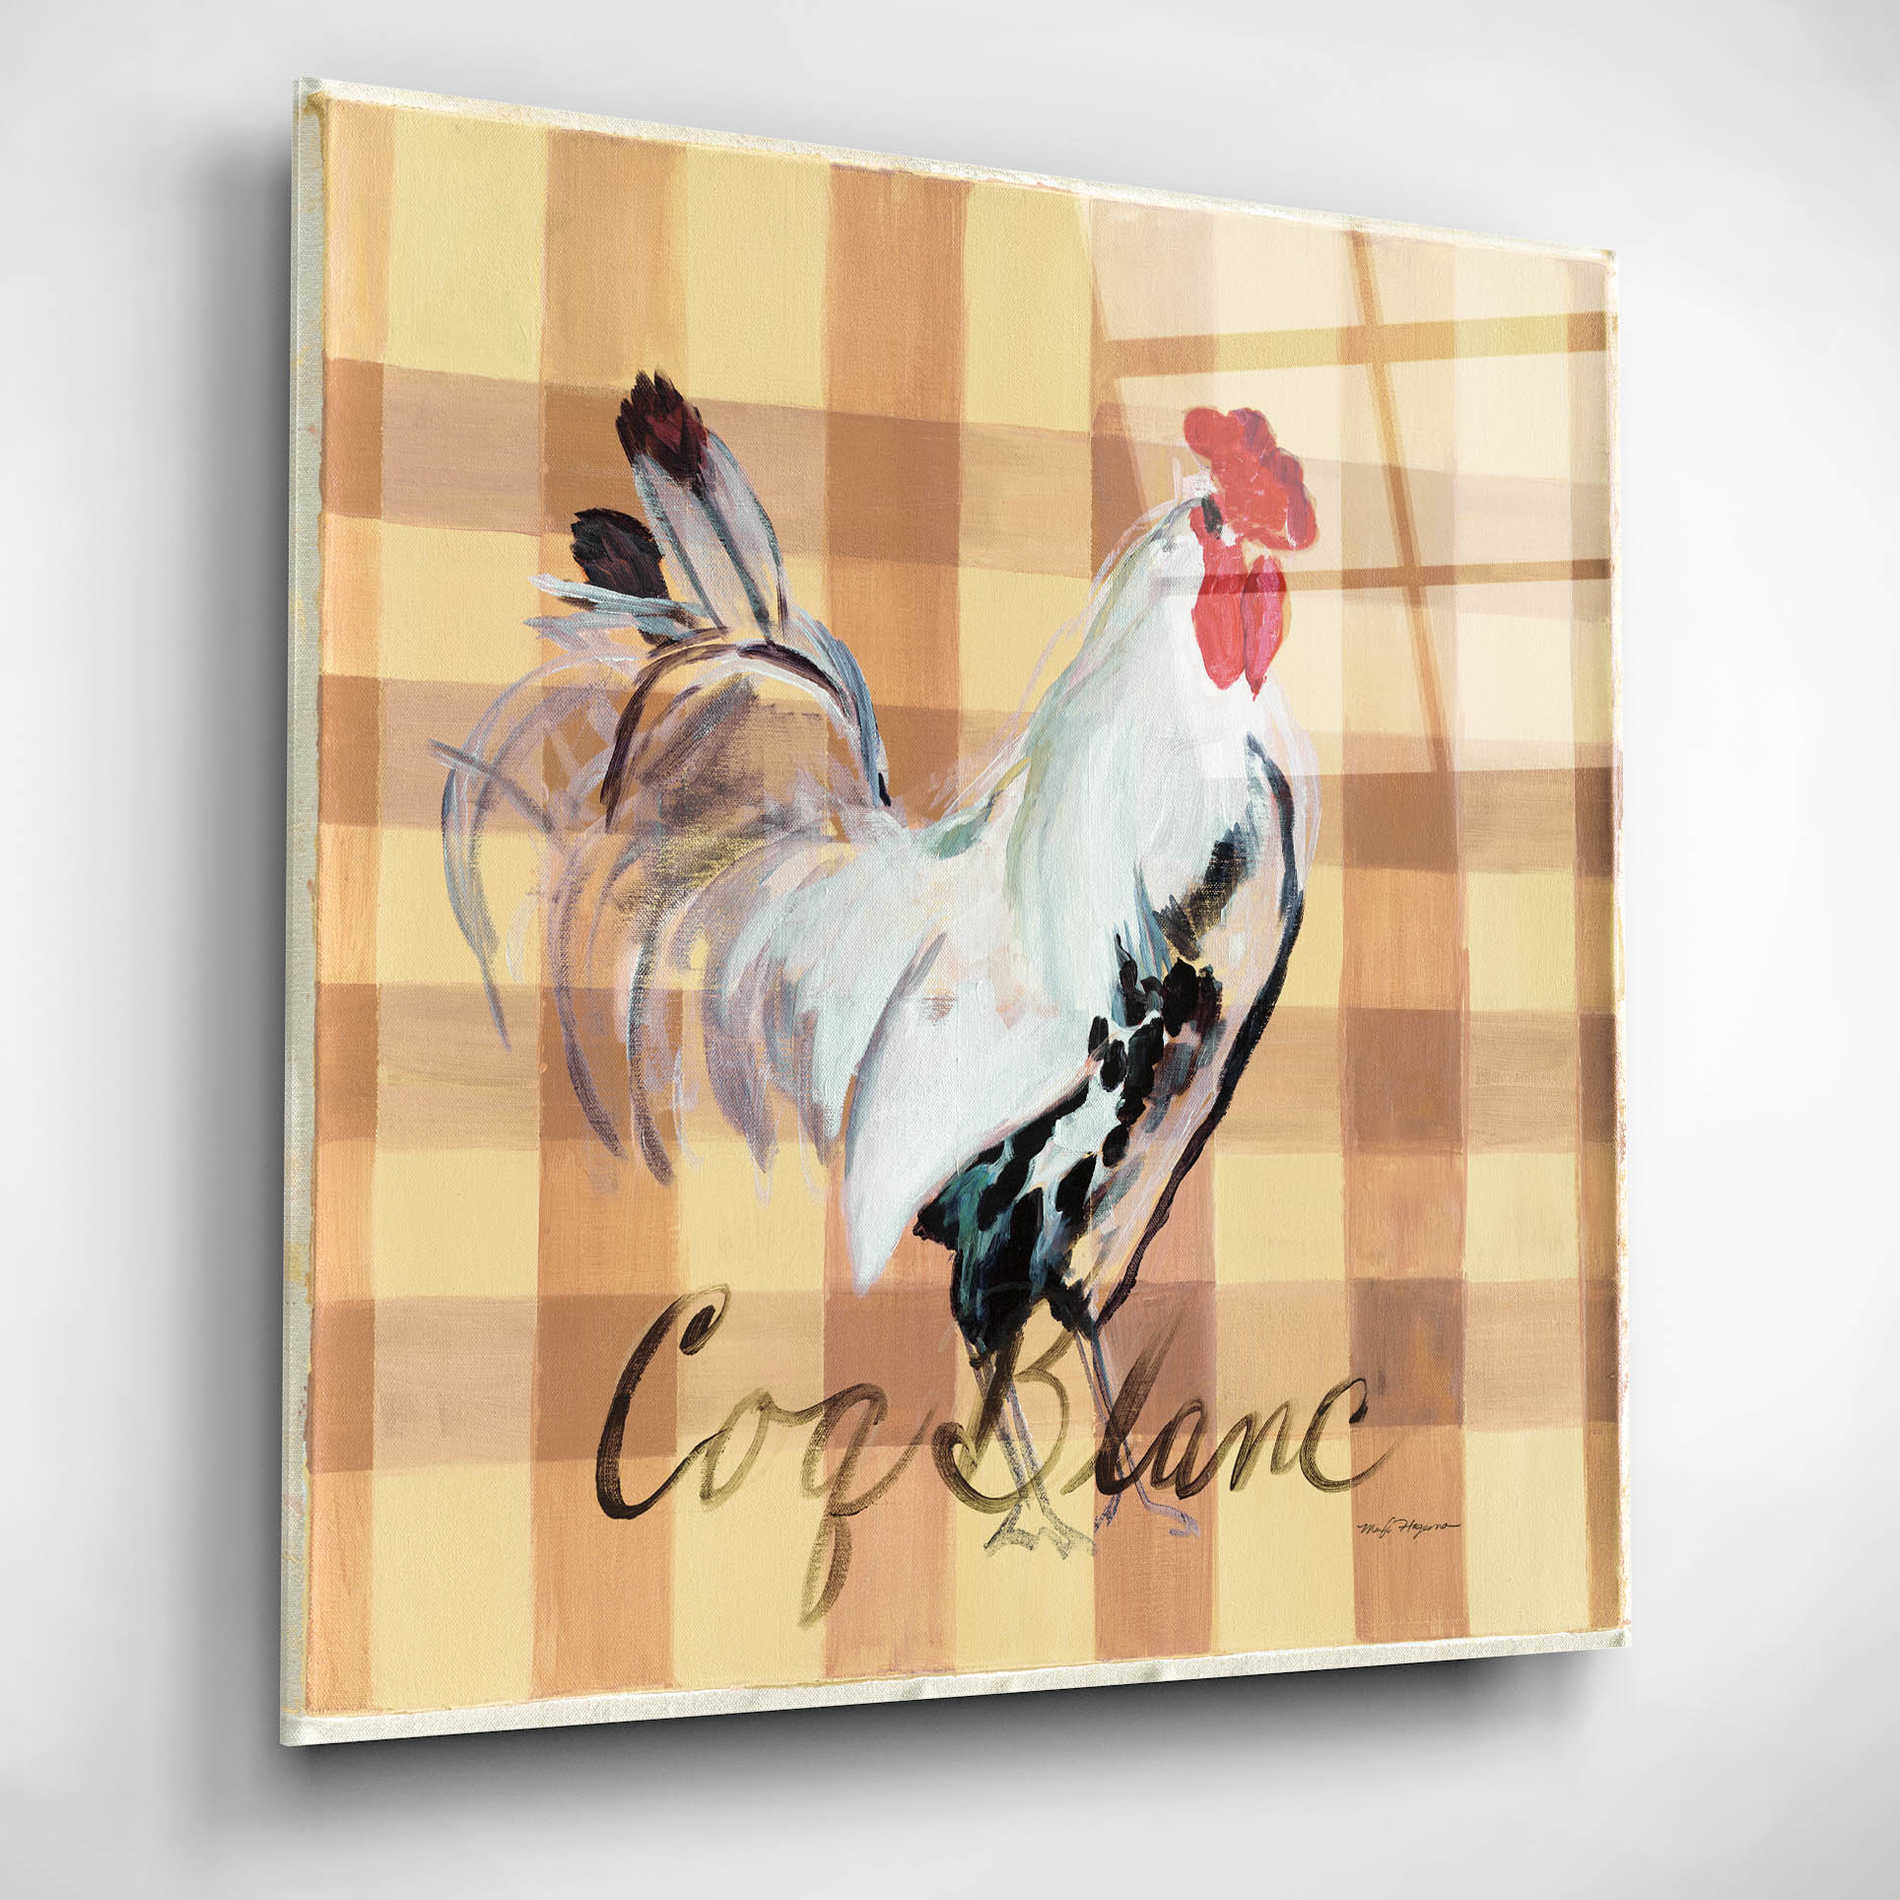 Epic Art 'Coq Blanc' by Marilyn Hageman, Acrylic Glass Wall Art,12x12